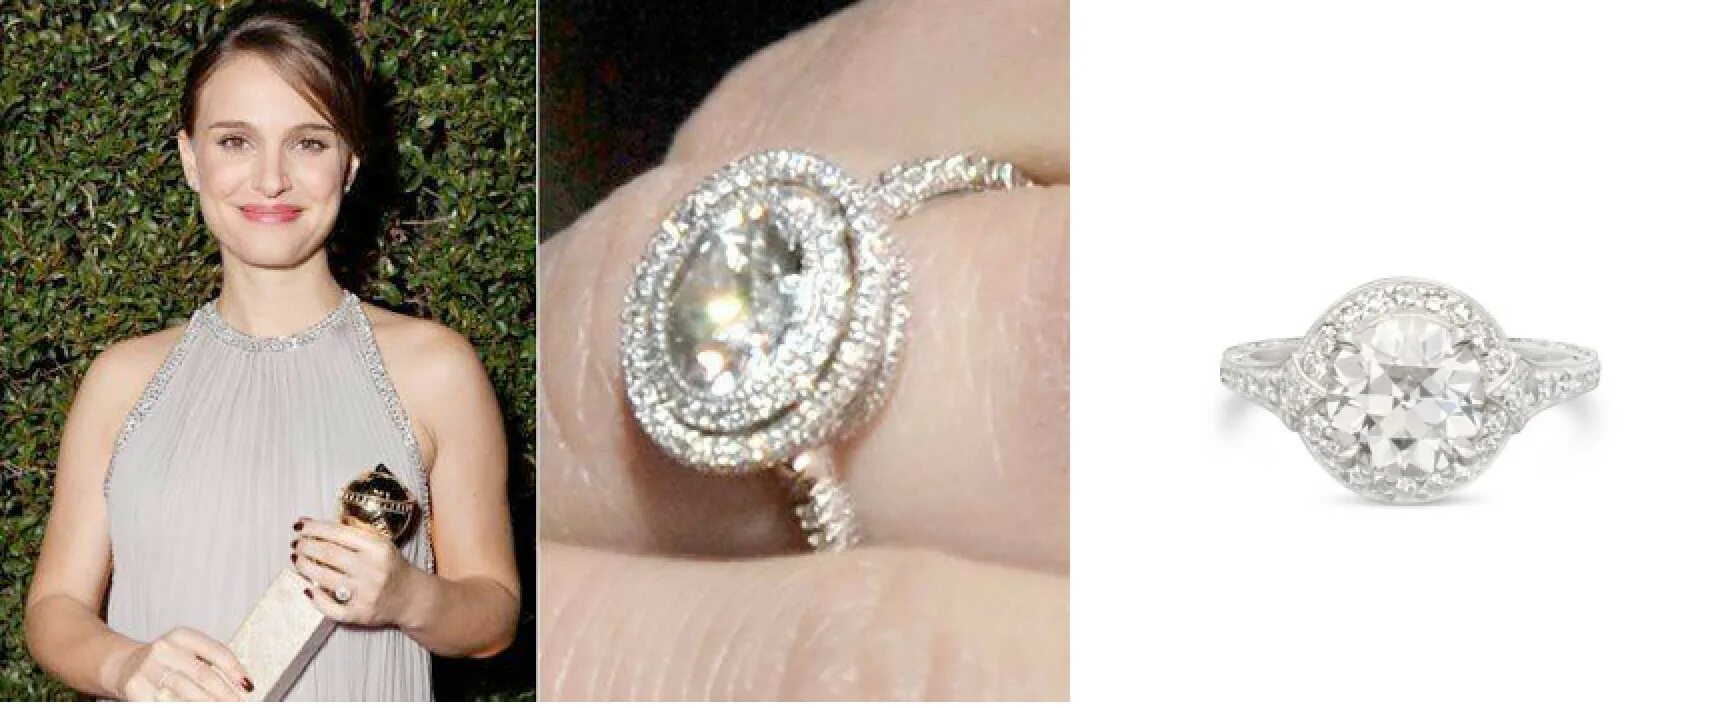 Обручальное кольцо Натали Портман. Натали Портман помолвочное кольцо. Натали Вуд кольцо. Обручальное кольцо Натали Вуд.